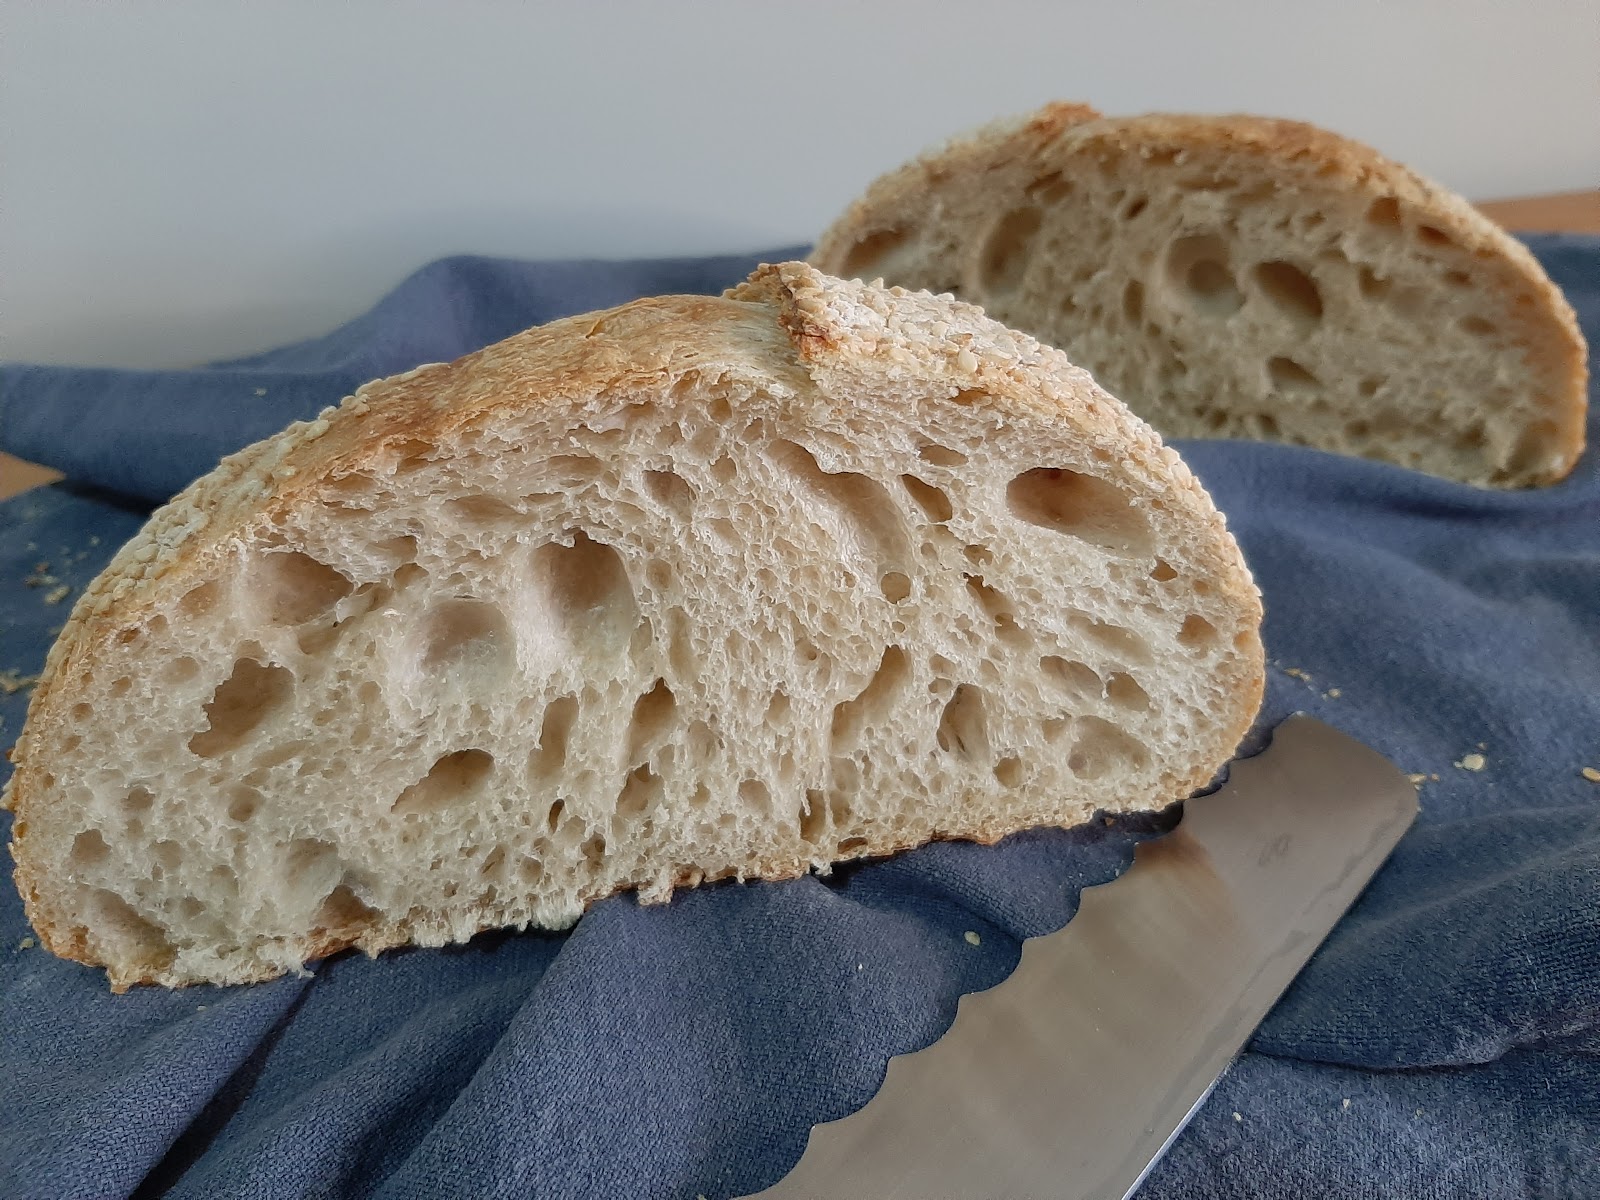 testei a farinha anaconda: pão pronto